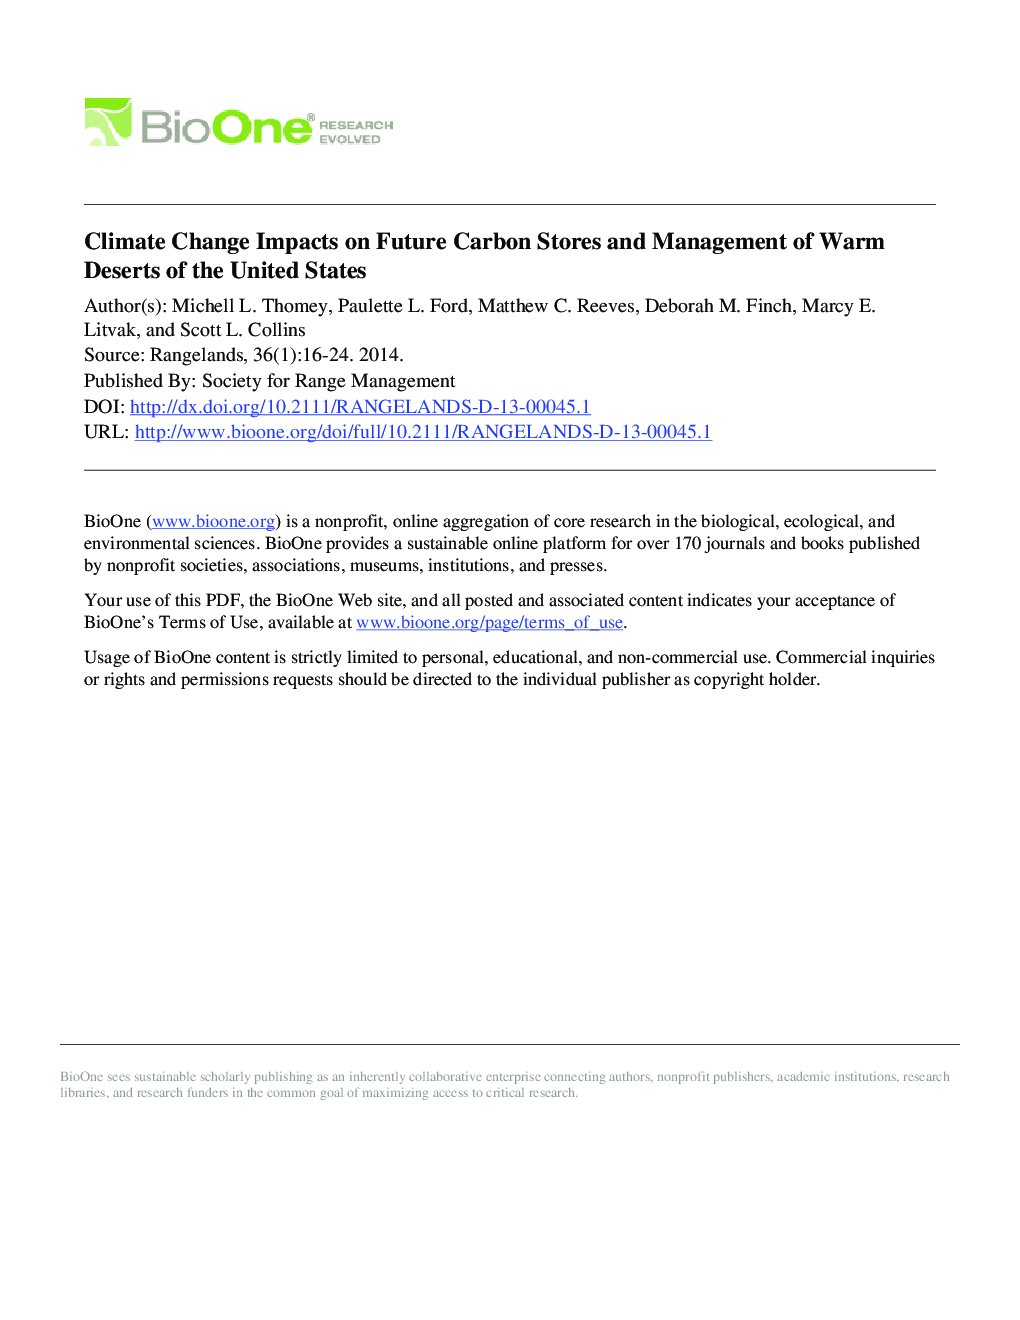 تاثیرات تغییرات آب و هوایی بر فروشگاه های آینده کربن و مدیریت بیابان های گرم ایالات متحده 